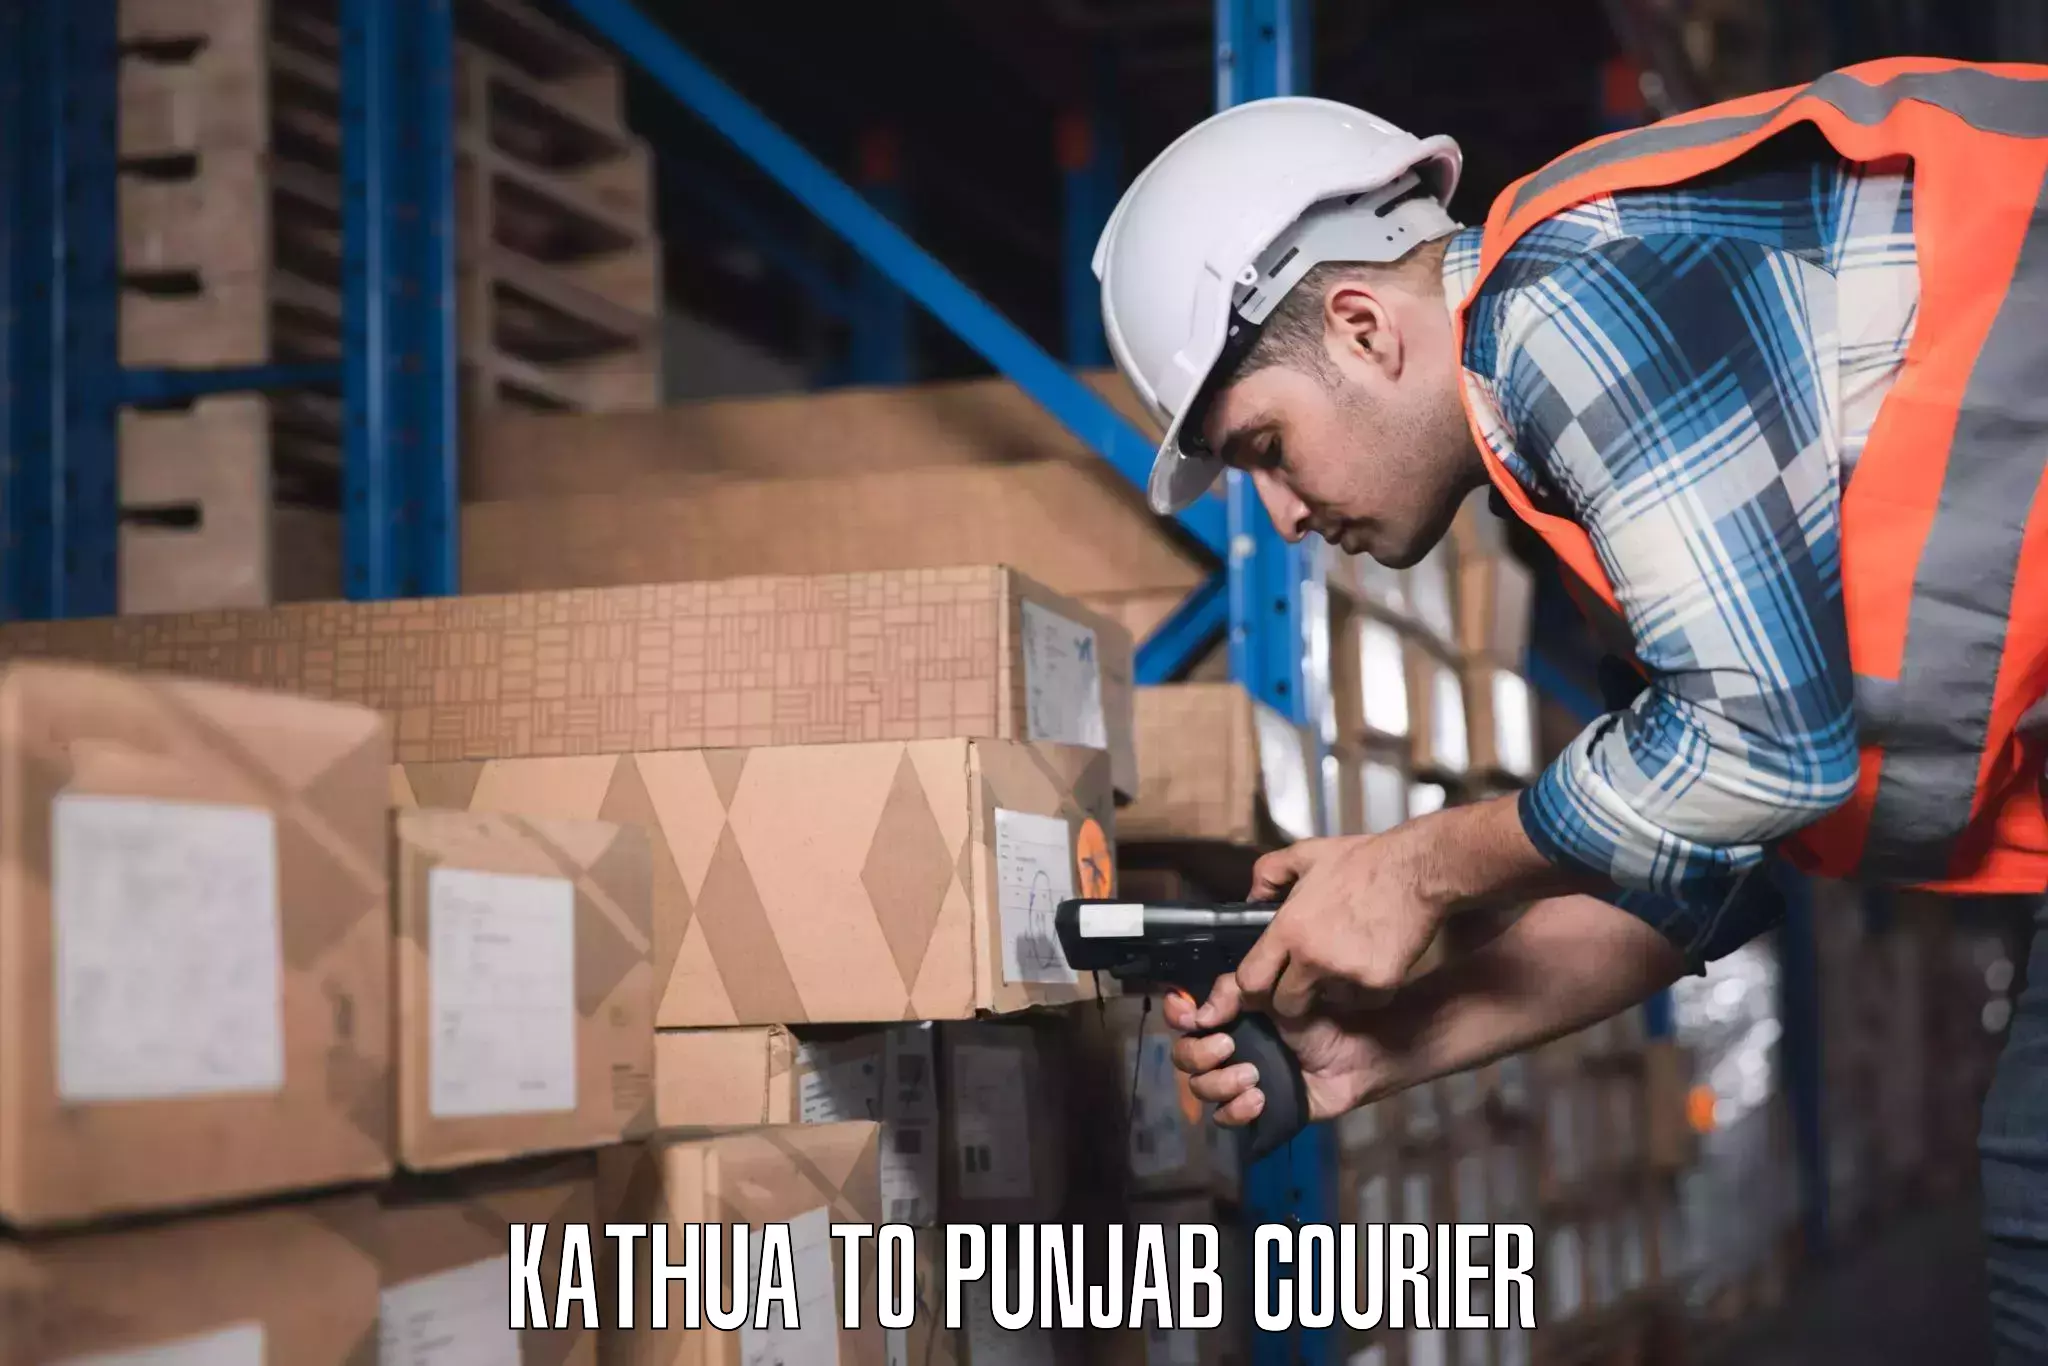 Luggage forwarding service Kathua to Punjab